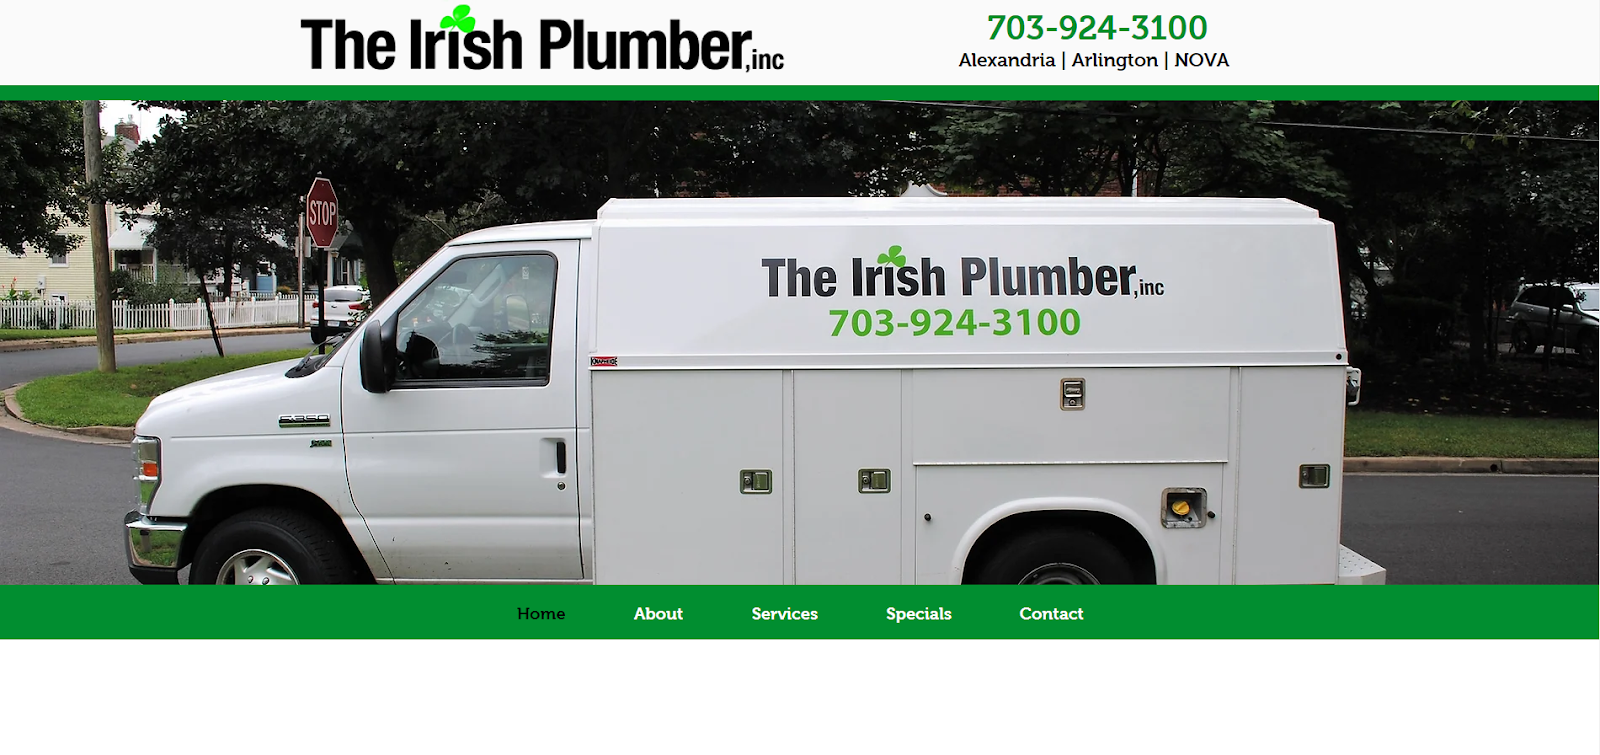 The Irish Plumber website